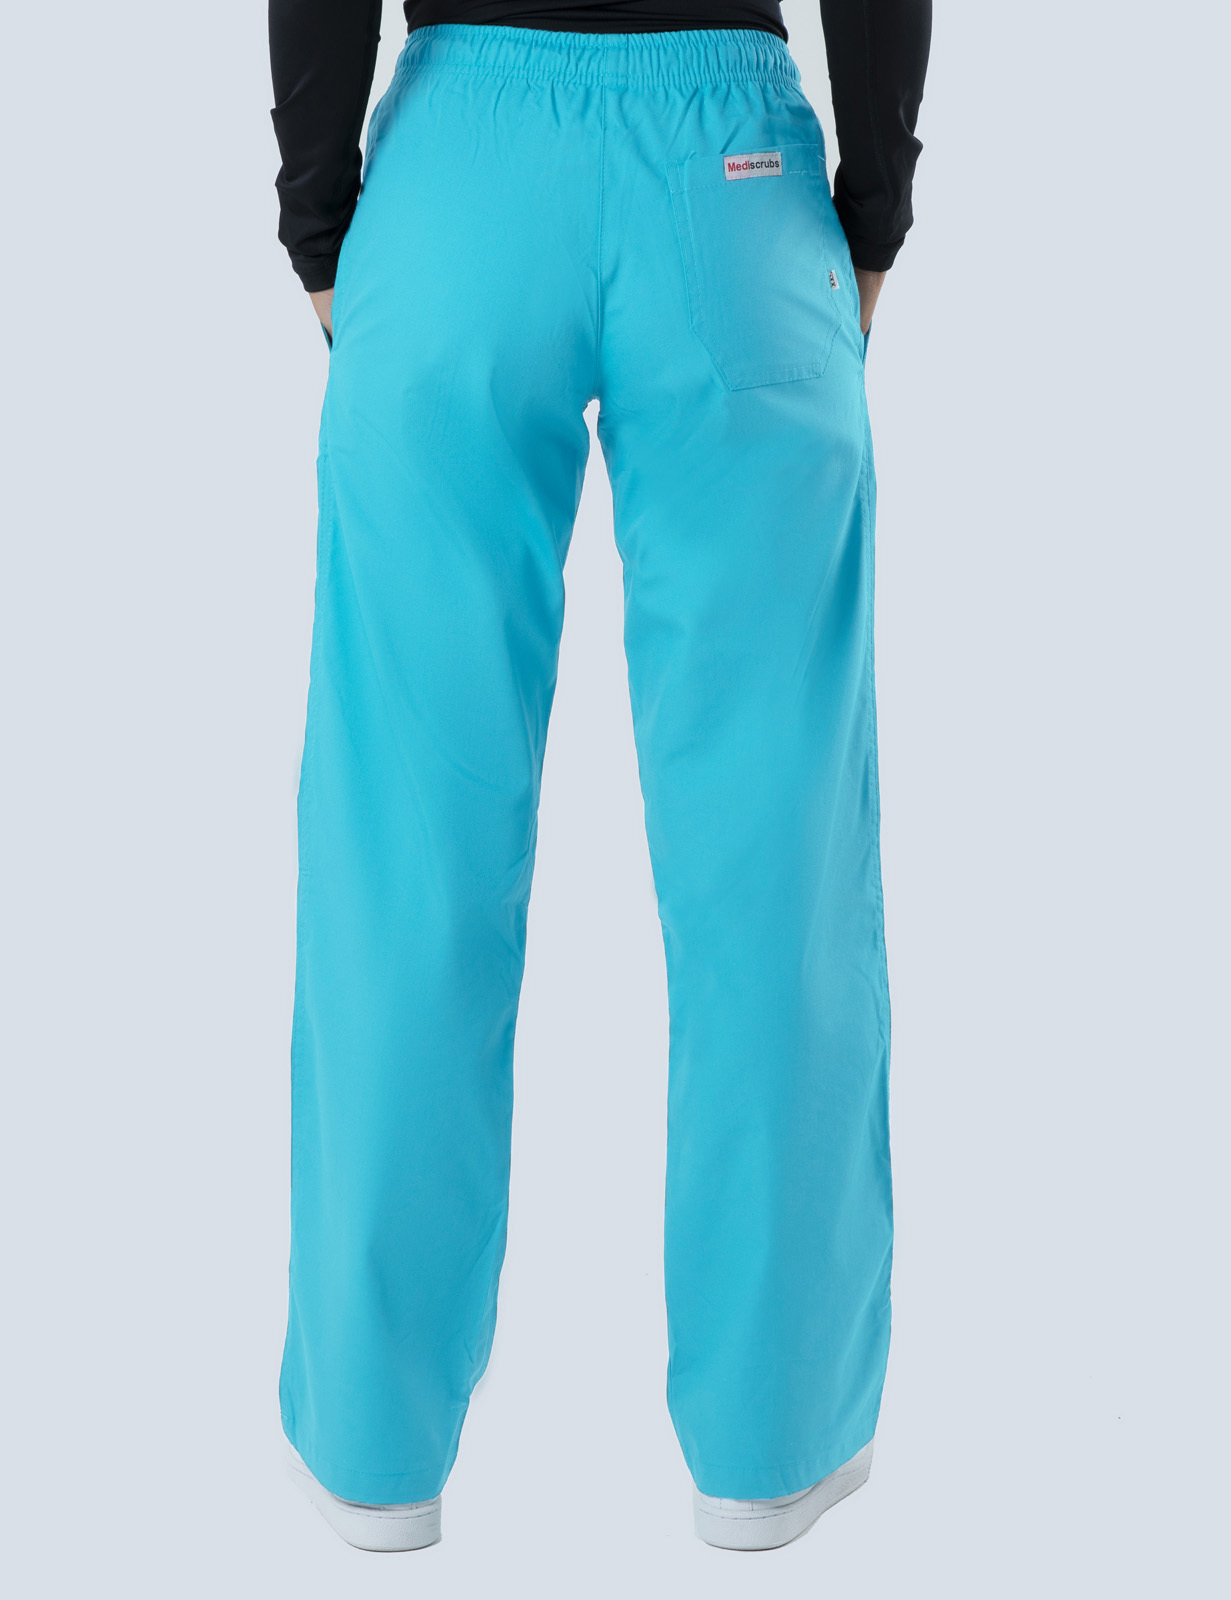 Women's Regular Cut Pants - Aqua - 5x Large